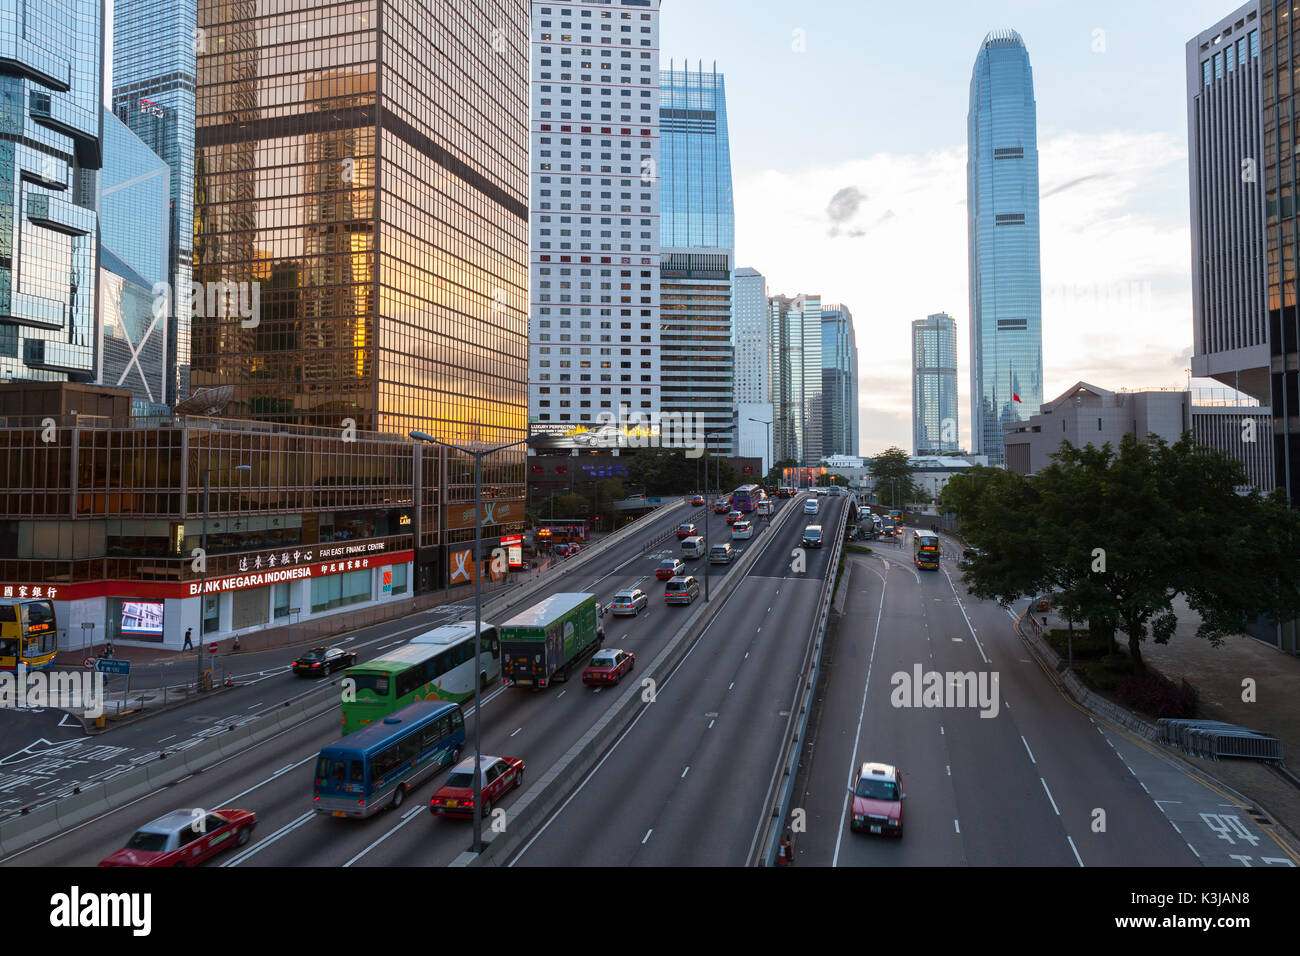 Hongkong - Juli 11, 2017: Street View von Hong Kong City Center. Connaught Rd Zentrale Perspektive mit der IFC Mall Stockfoto